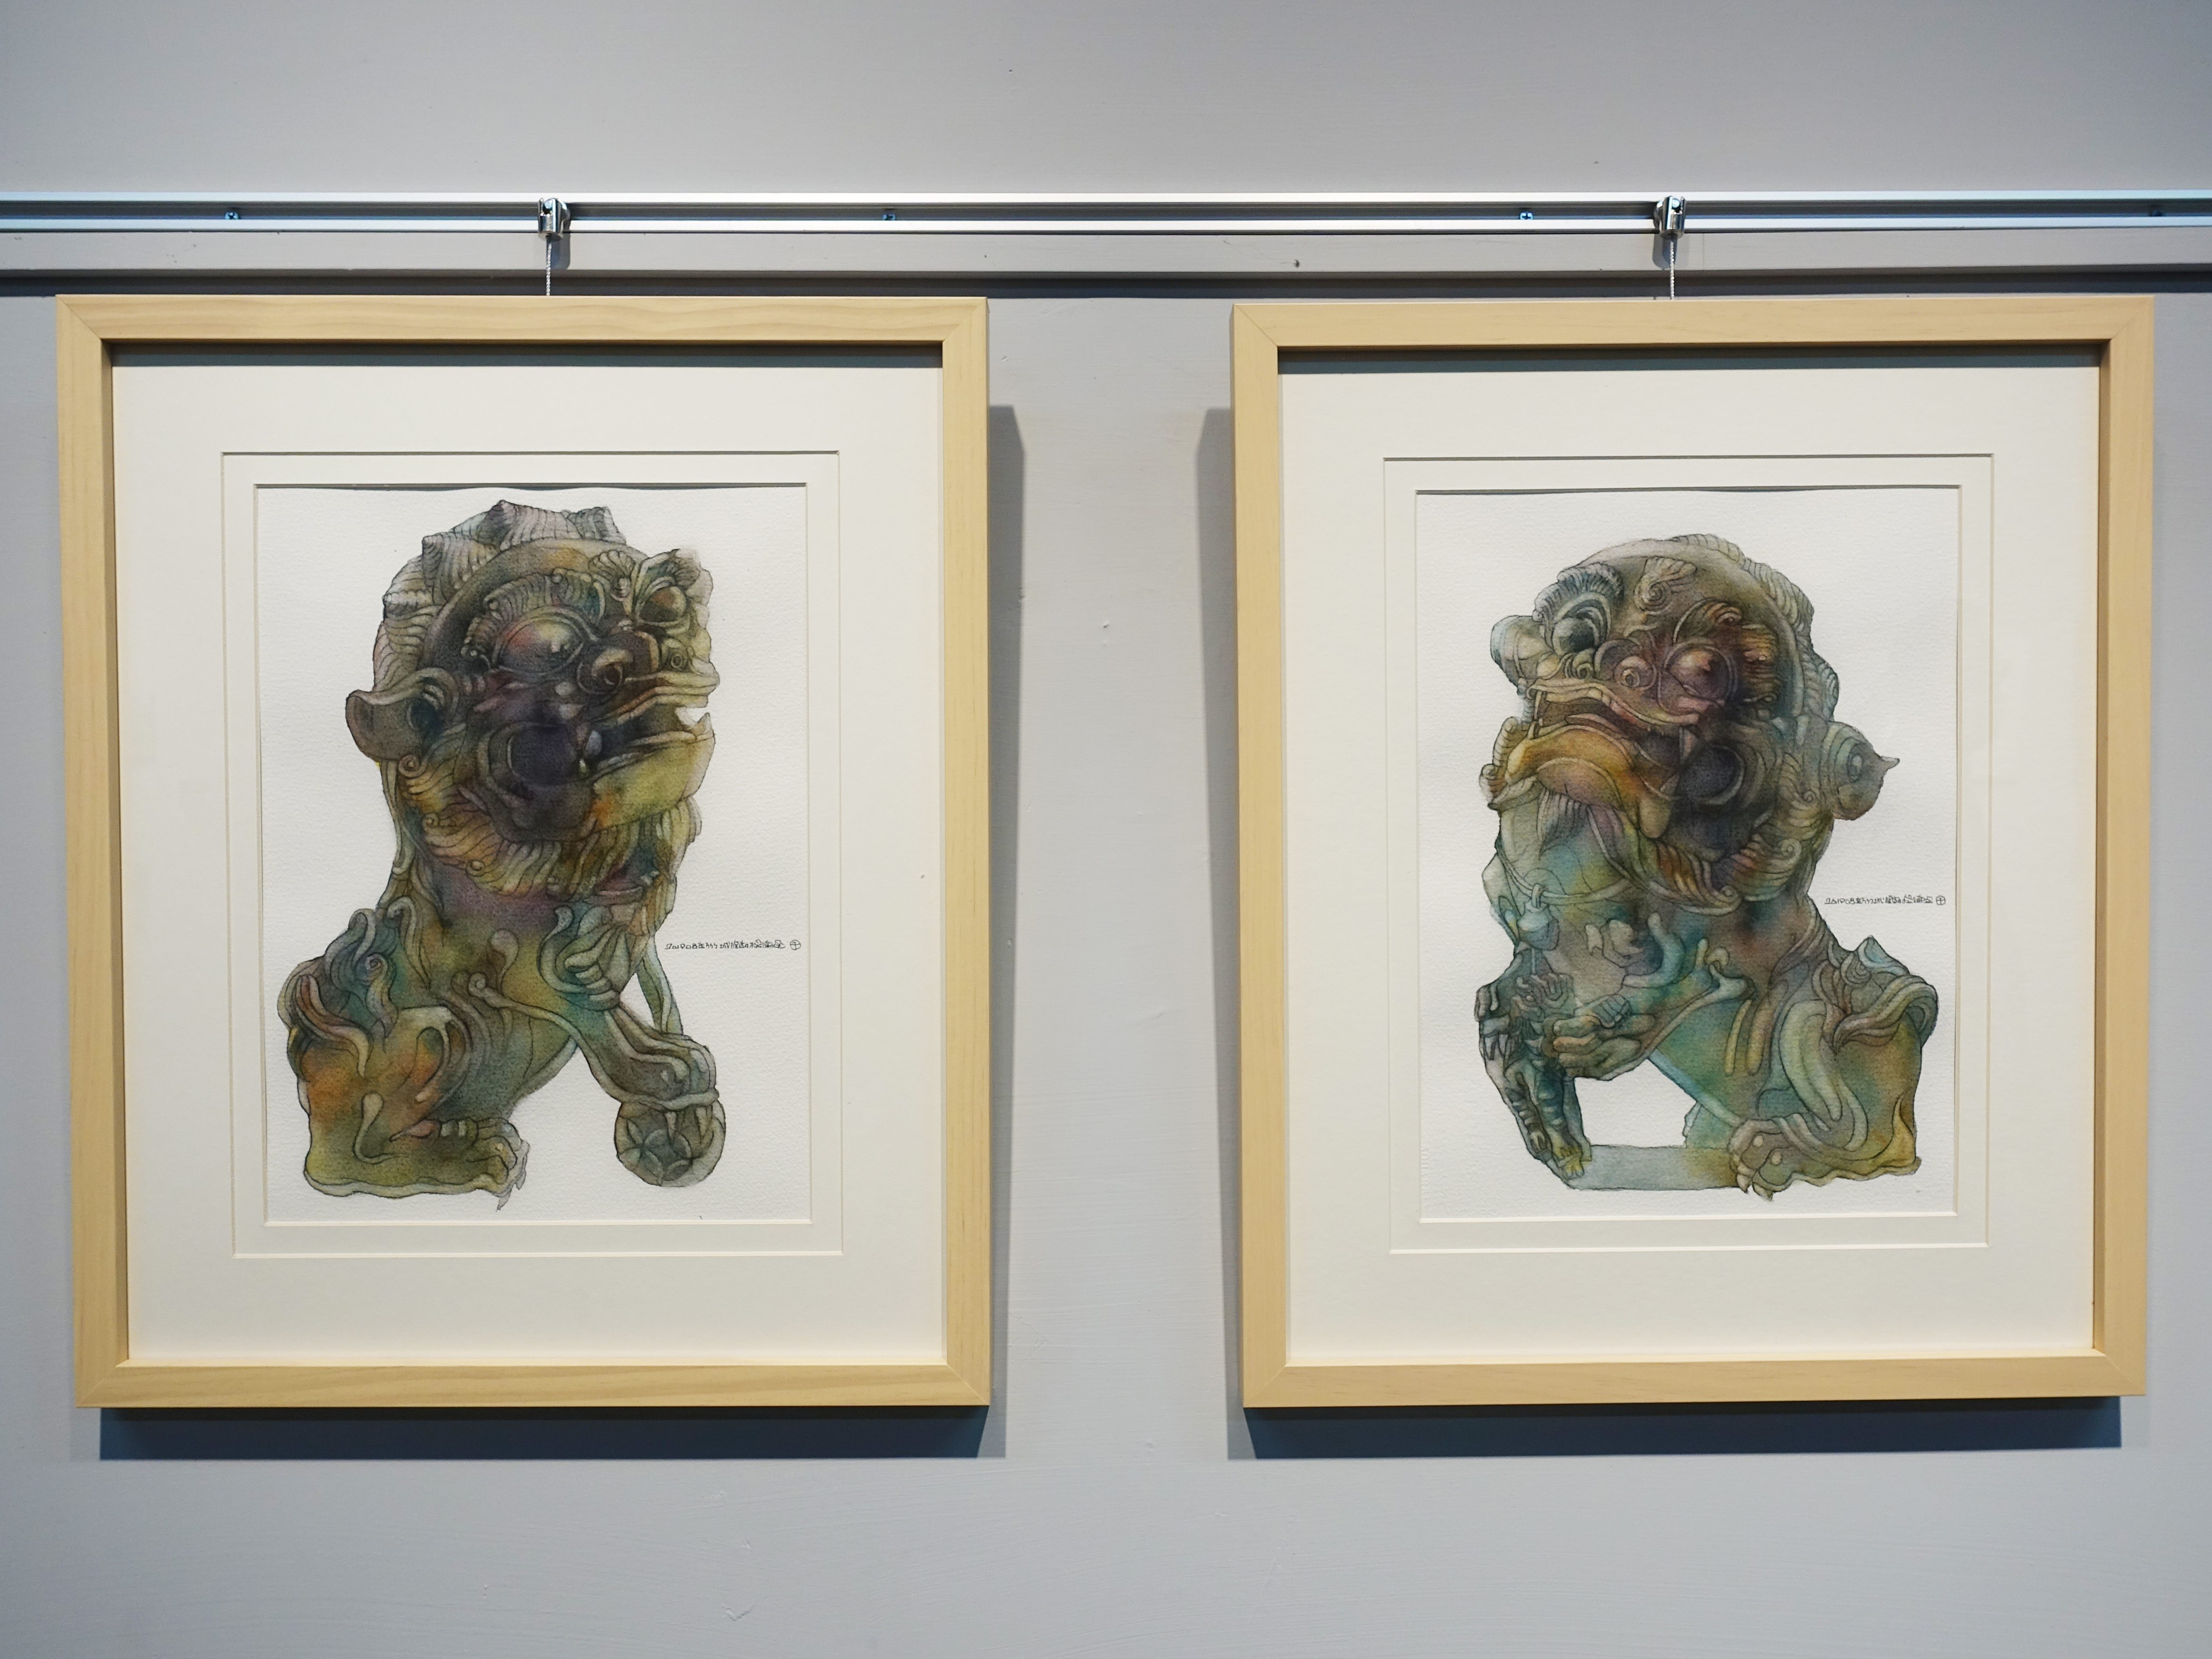 藝術家楊德全於第三屆出彰化城藝術展「古城的苗圃」展出《石獅子系列-新竹城隍廟門前獅》系列。